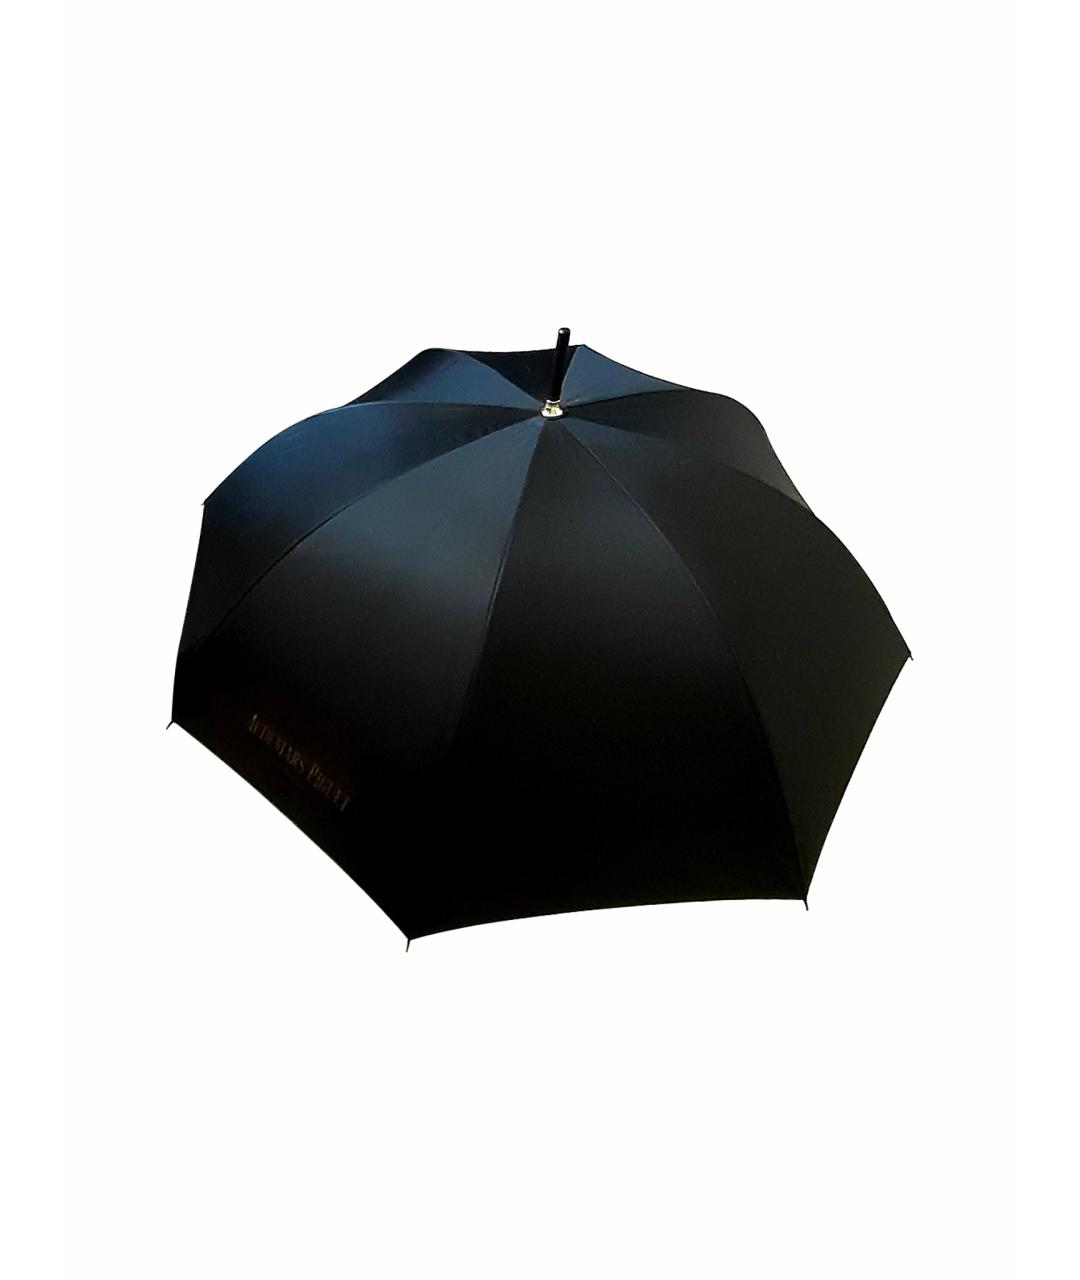 Audemars Piguet Черный зонт, фото 1